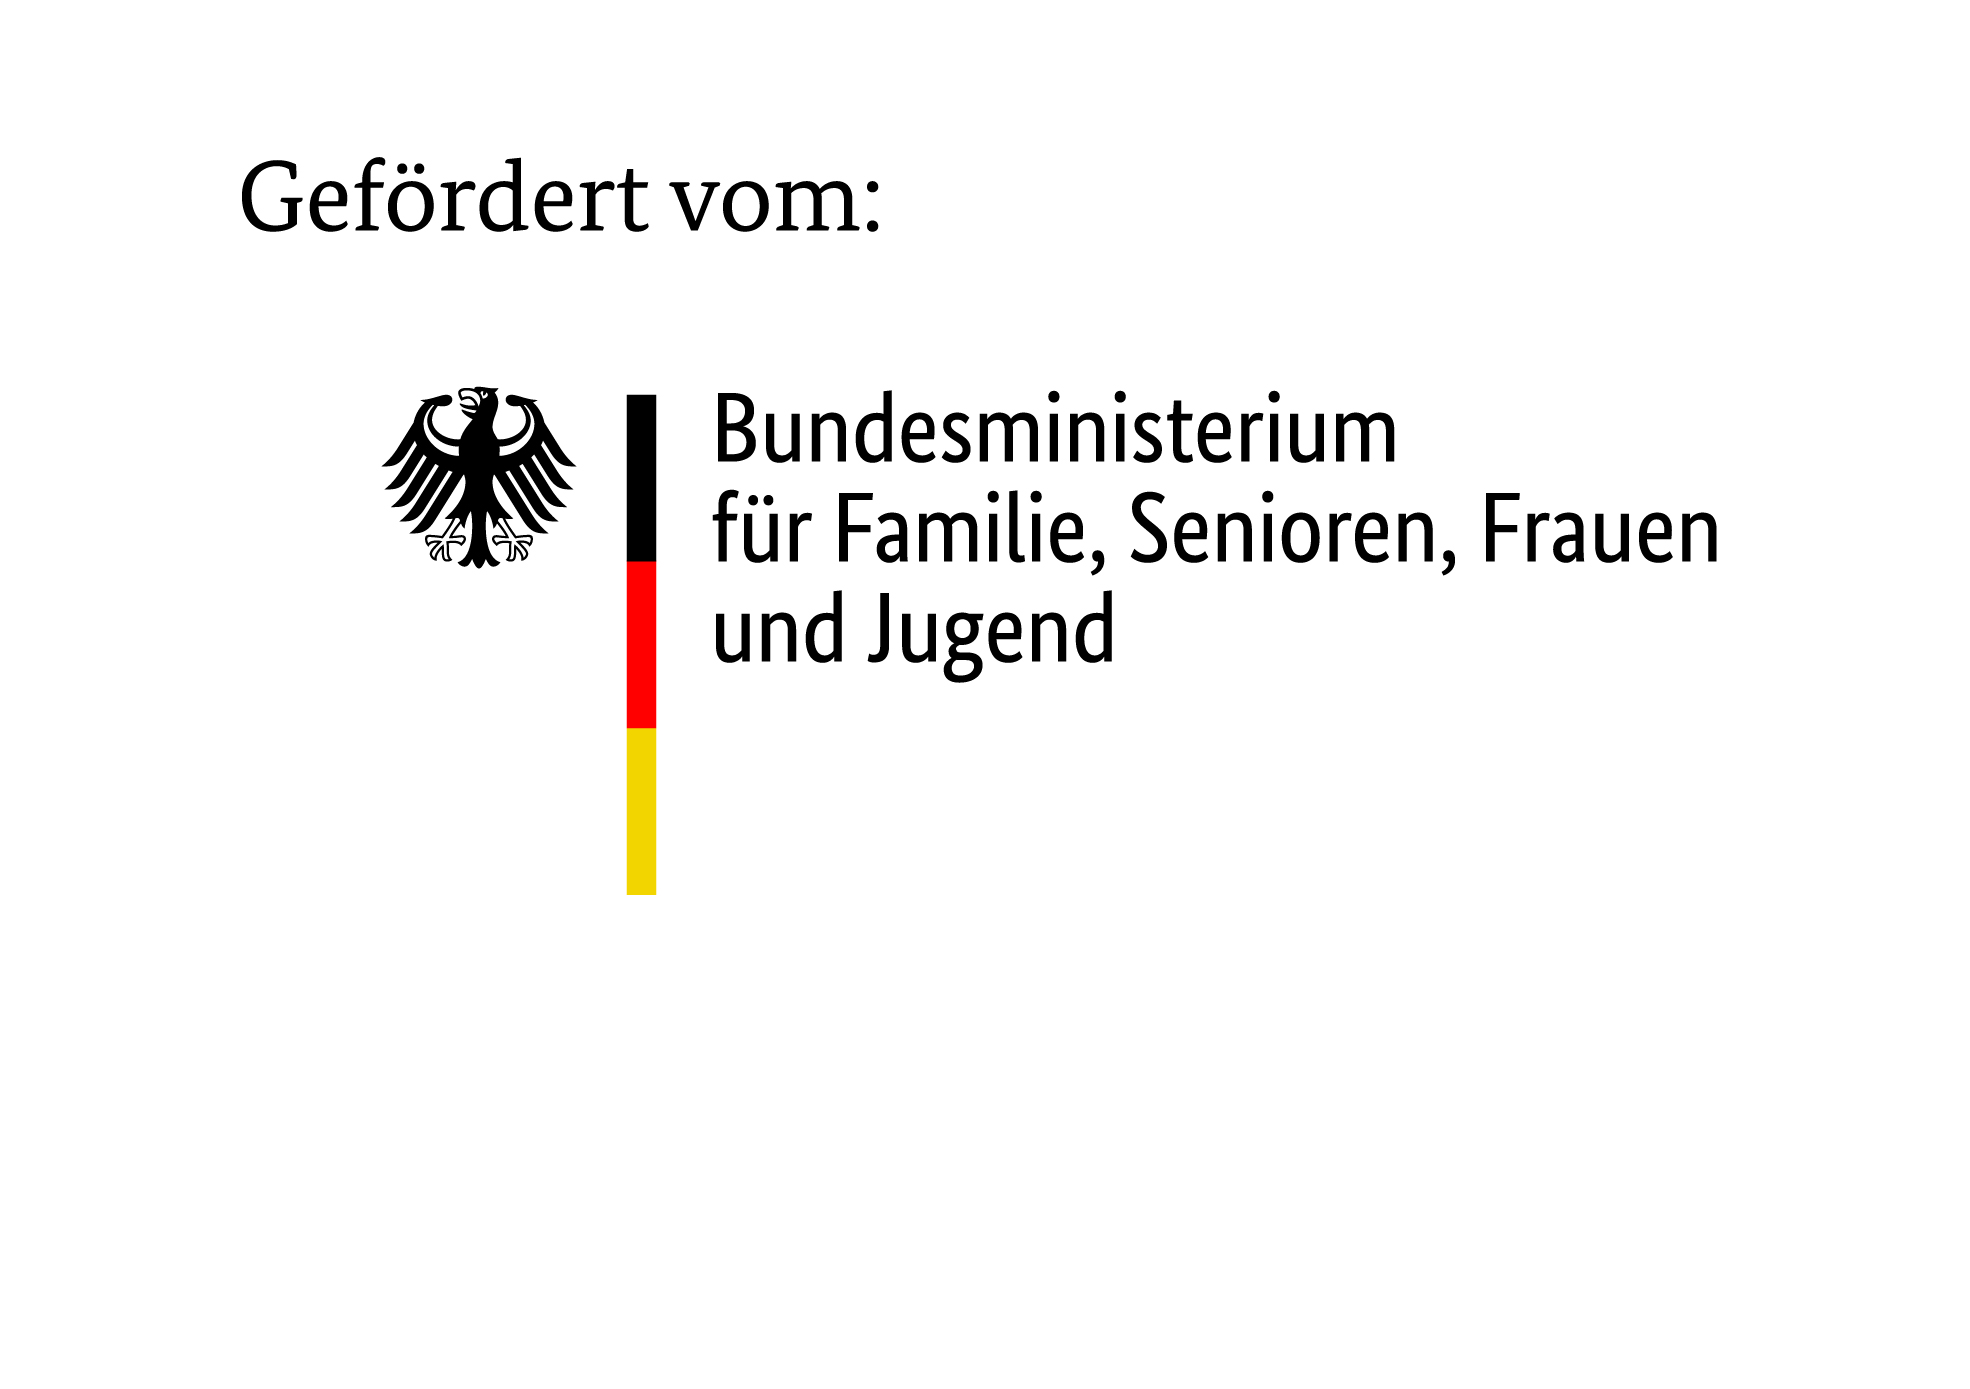 Logo: Gefördert durch Bundesministerium für Gesundheit aufgrund eines Beschlusses des Deutschen Bundestages, zum Bundesministerium für Gesundheit